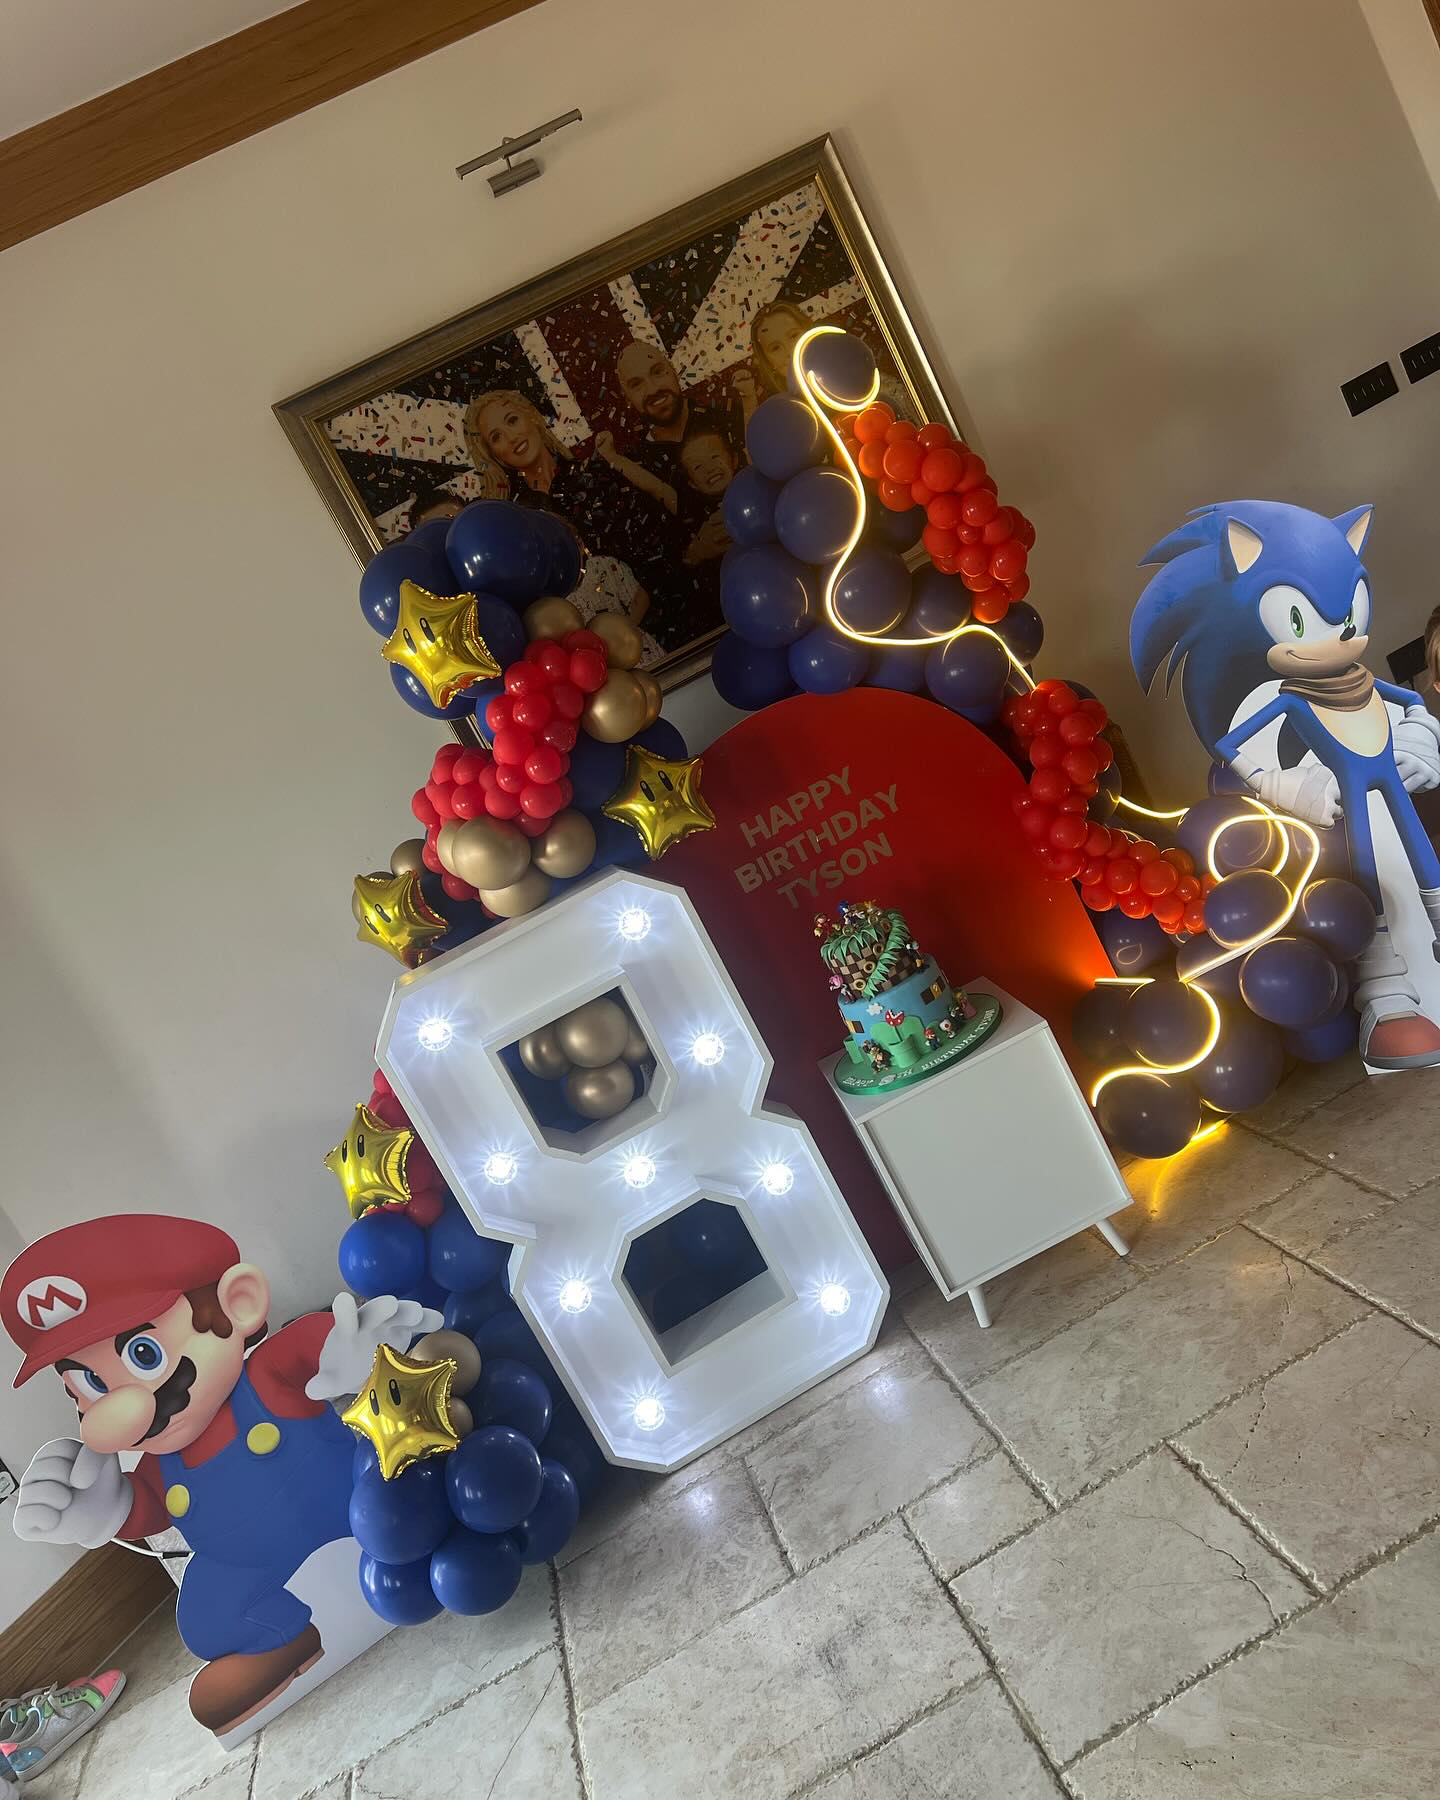 La fête des jeunes était sur le thème de Sonic et Mario